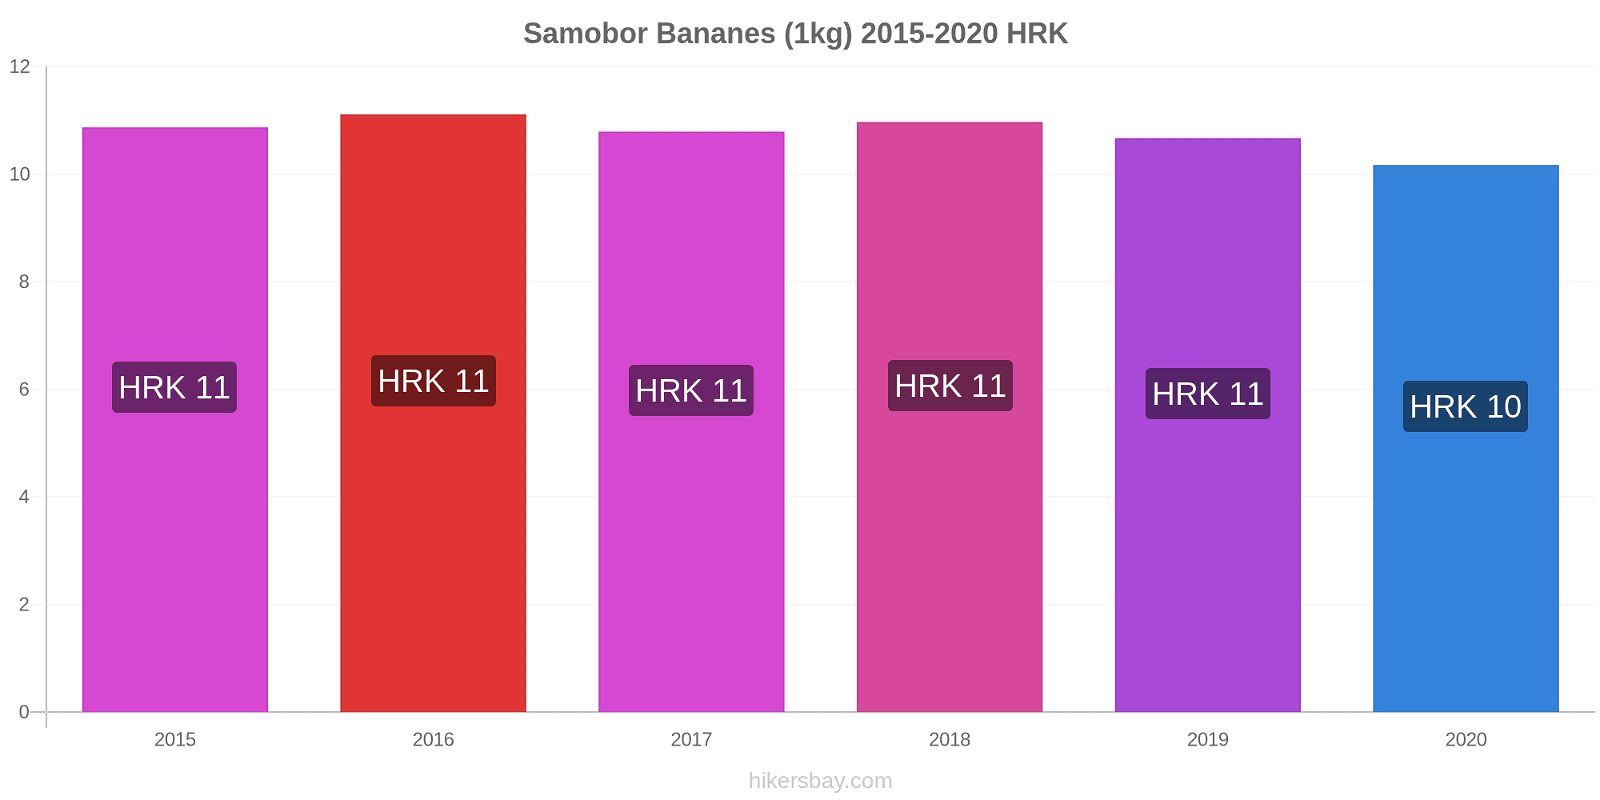 Samobor changements de prix Bananes (1kg) hikersbay.com